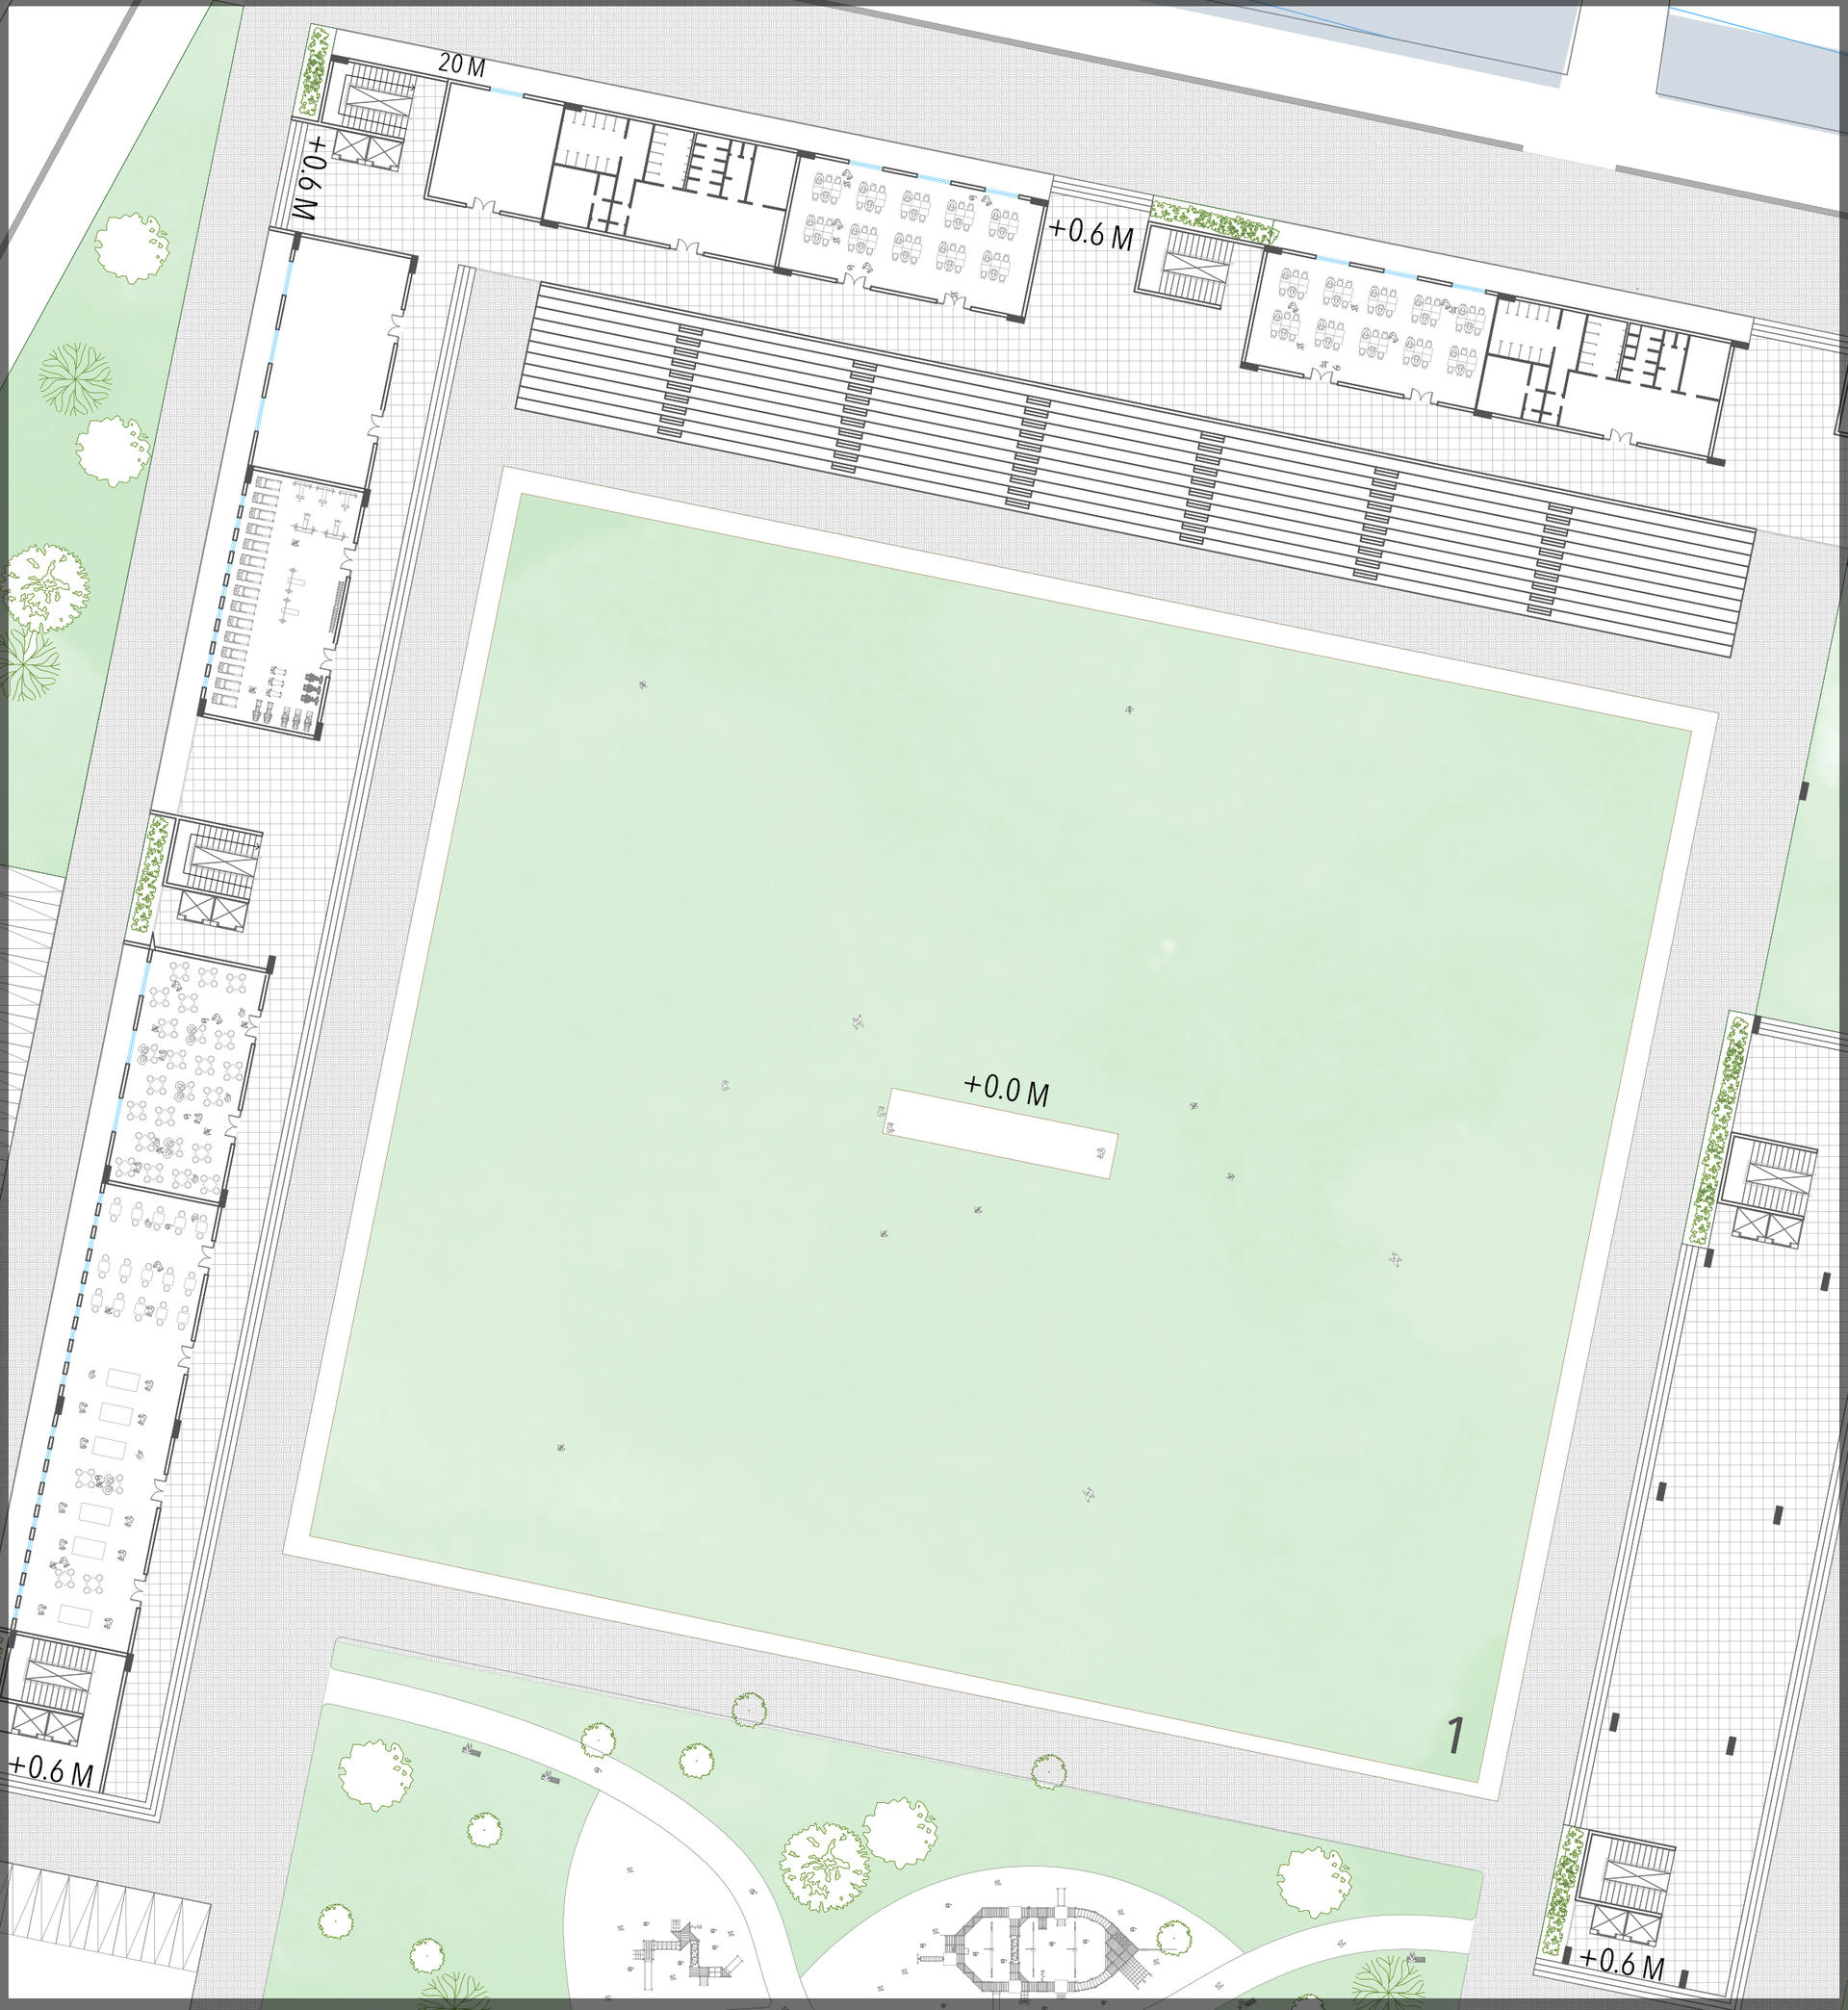 Zoom in Plan _Cricket Field